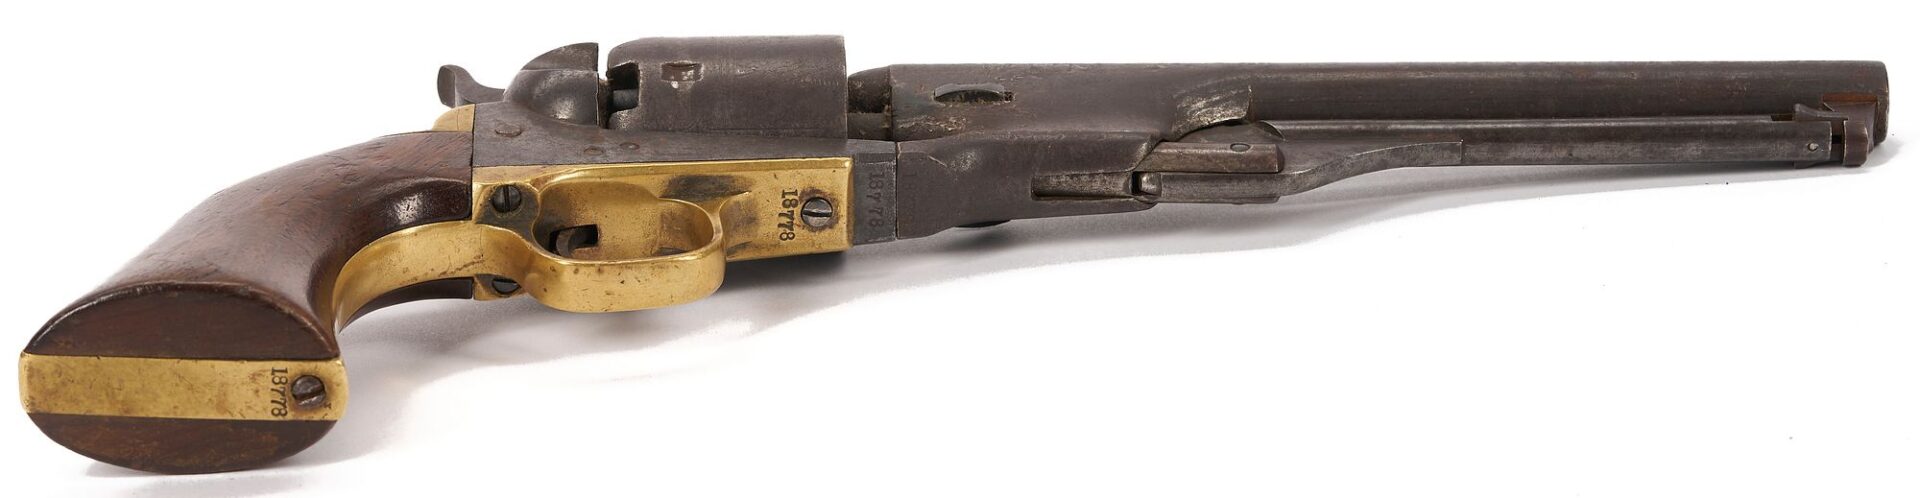 Lot 549: Colt Model 1861 Navy Revolver; 1864 Civil War Era